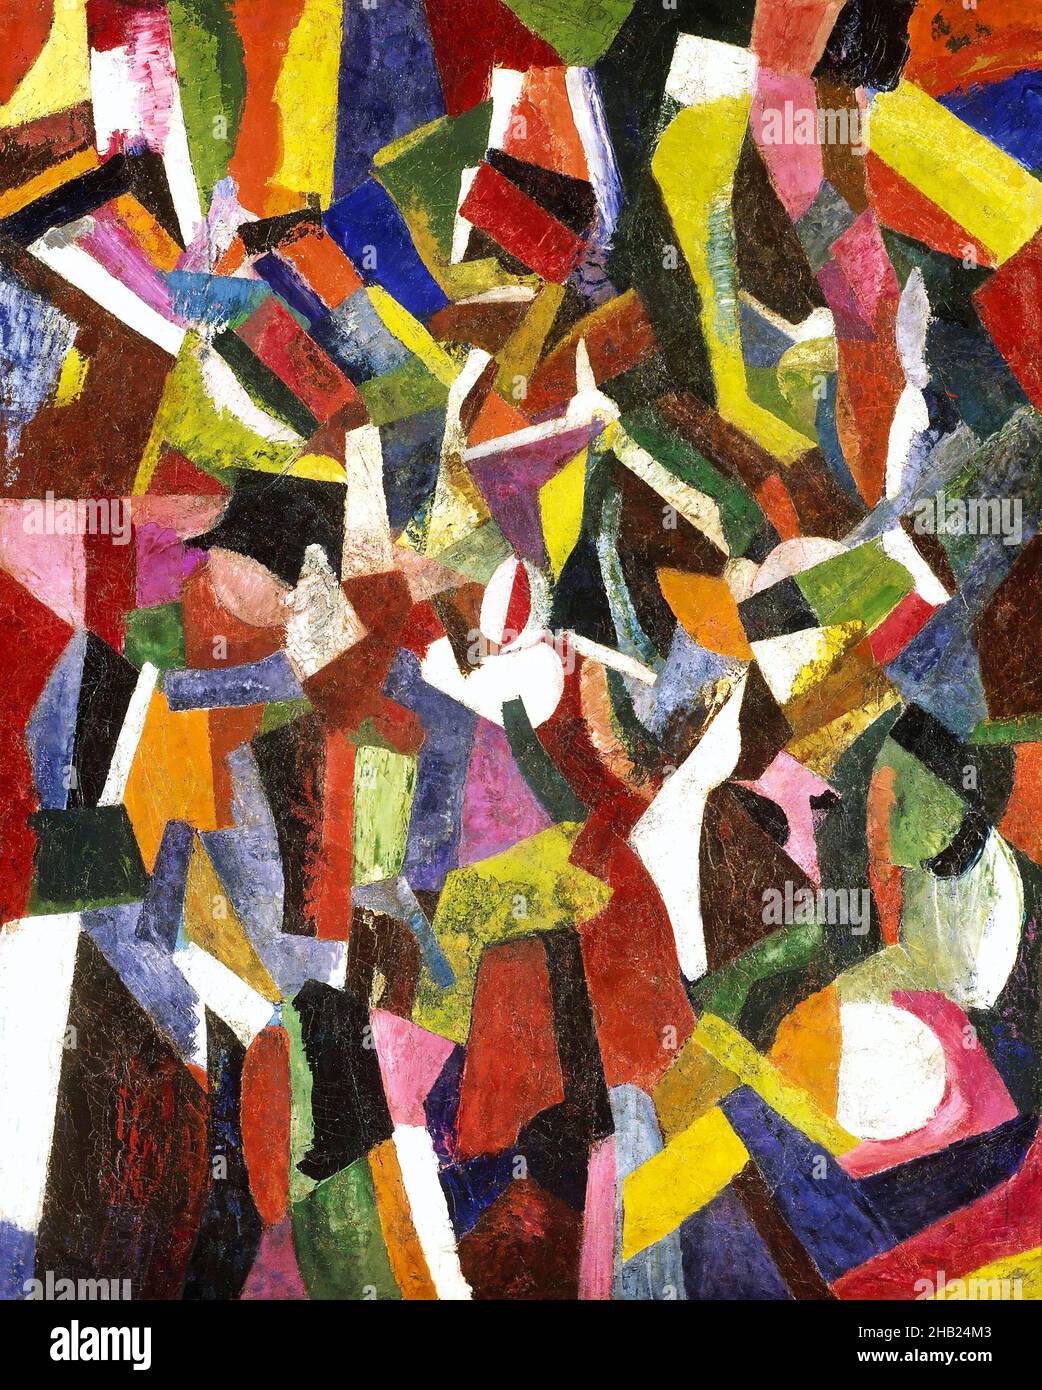 Komposition VI des amerikanischen kubistischen Malers Patrick Henry Bruce (1881-1936), Öl auf Leinwand, 1916 Stockfoto